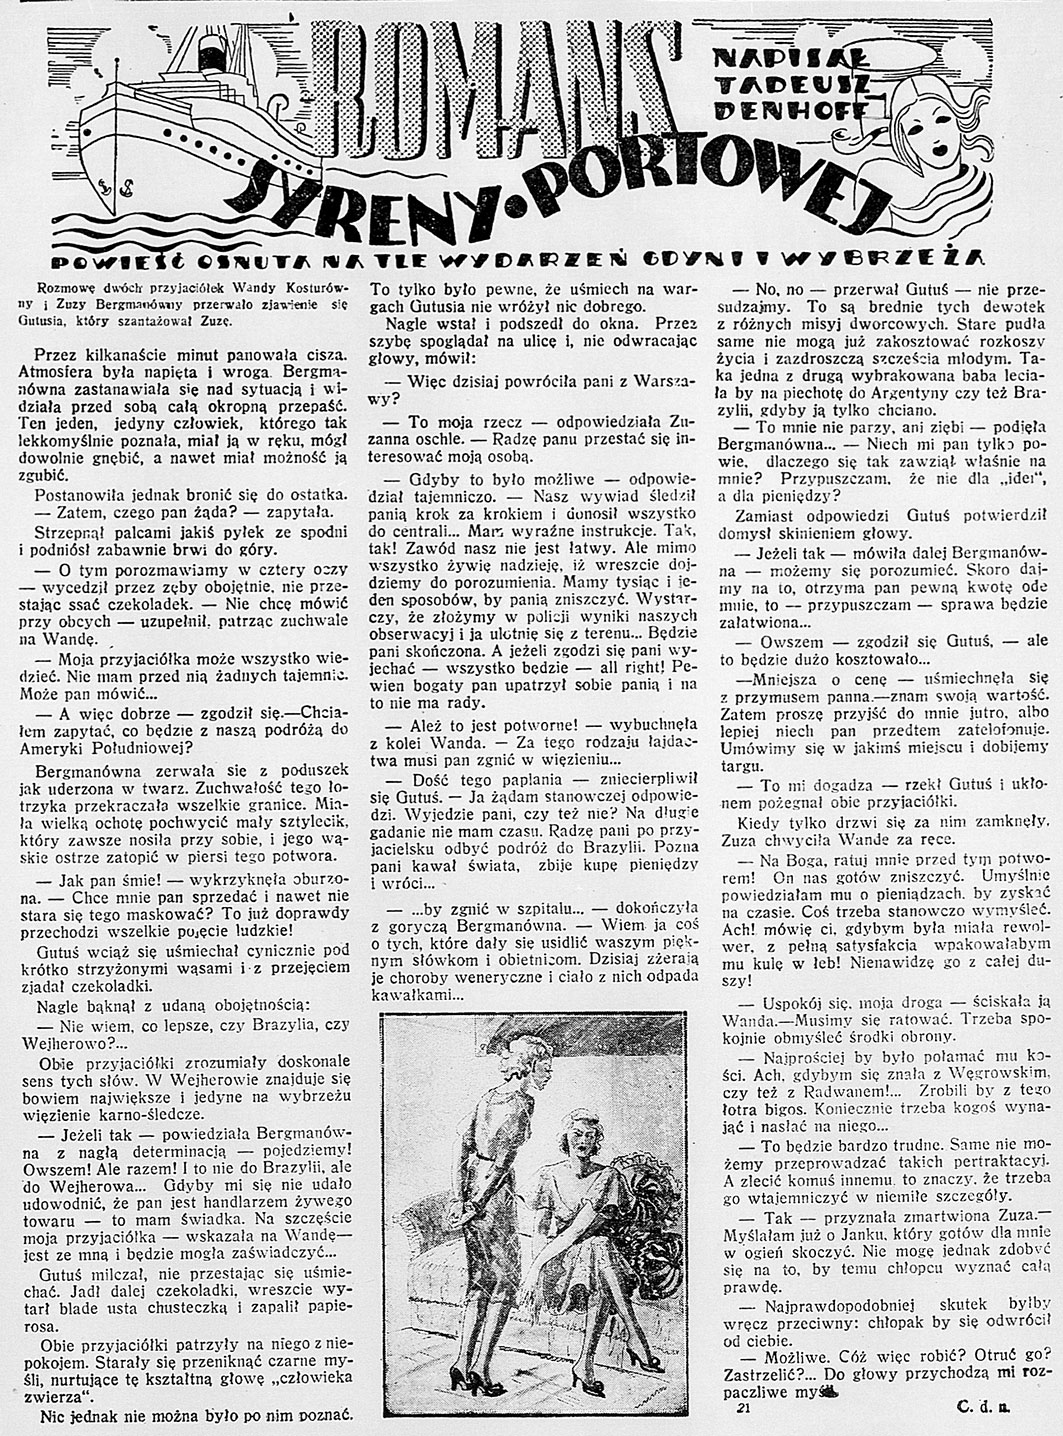 Romans syreny portowej. Powieść osnuta na tle wydarzeń Gdyni i wybrzeża / Tadeusz Denhoff. - 1938, nr 31, s. 4